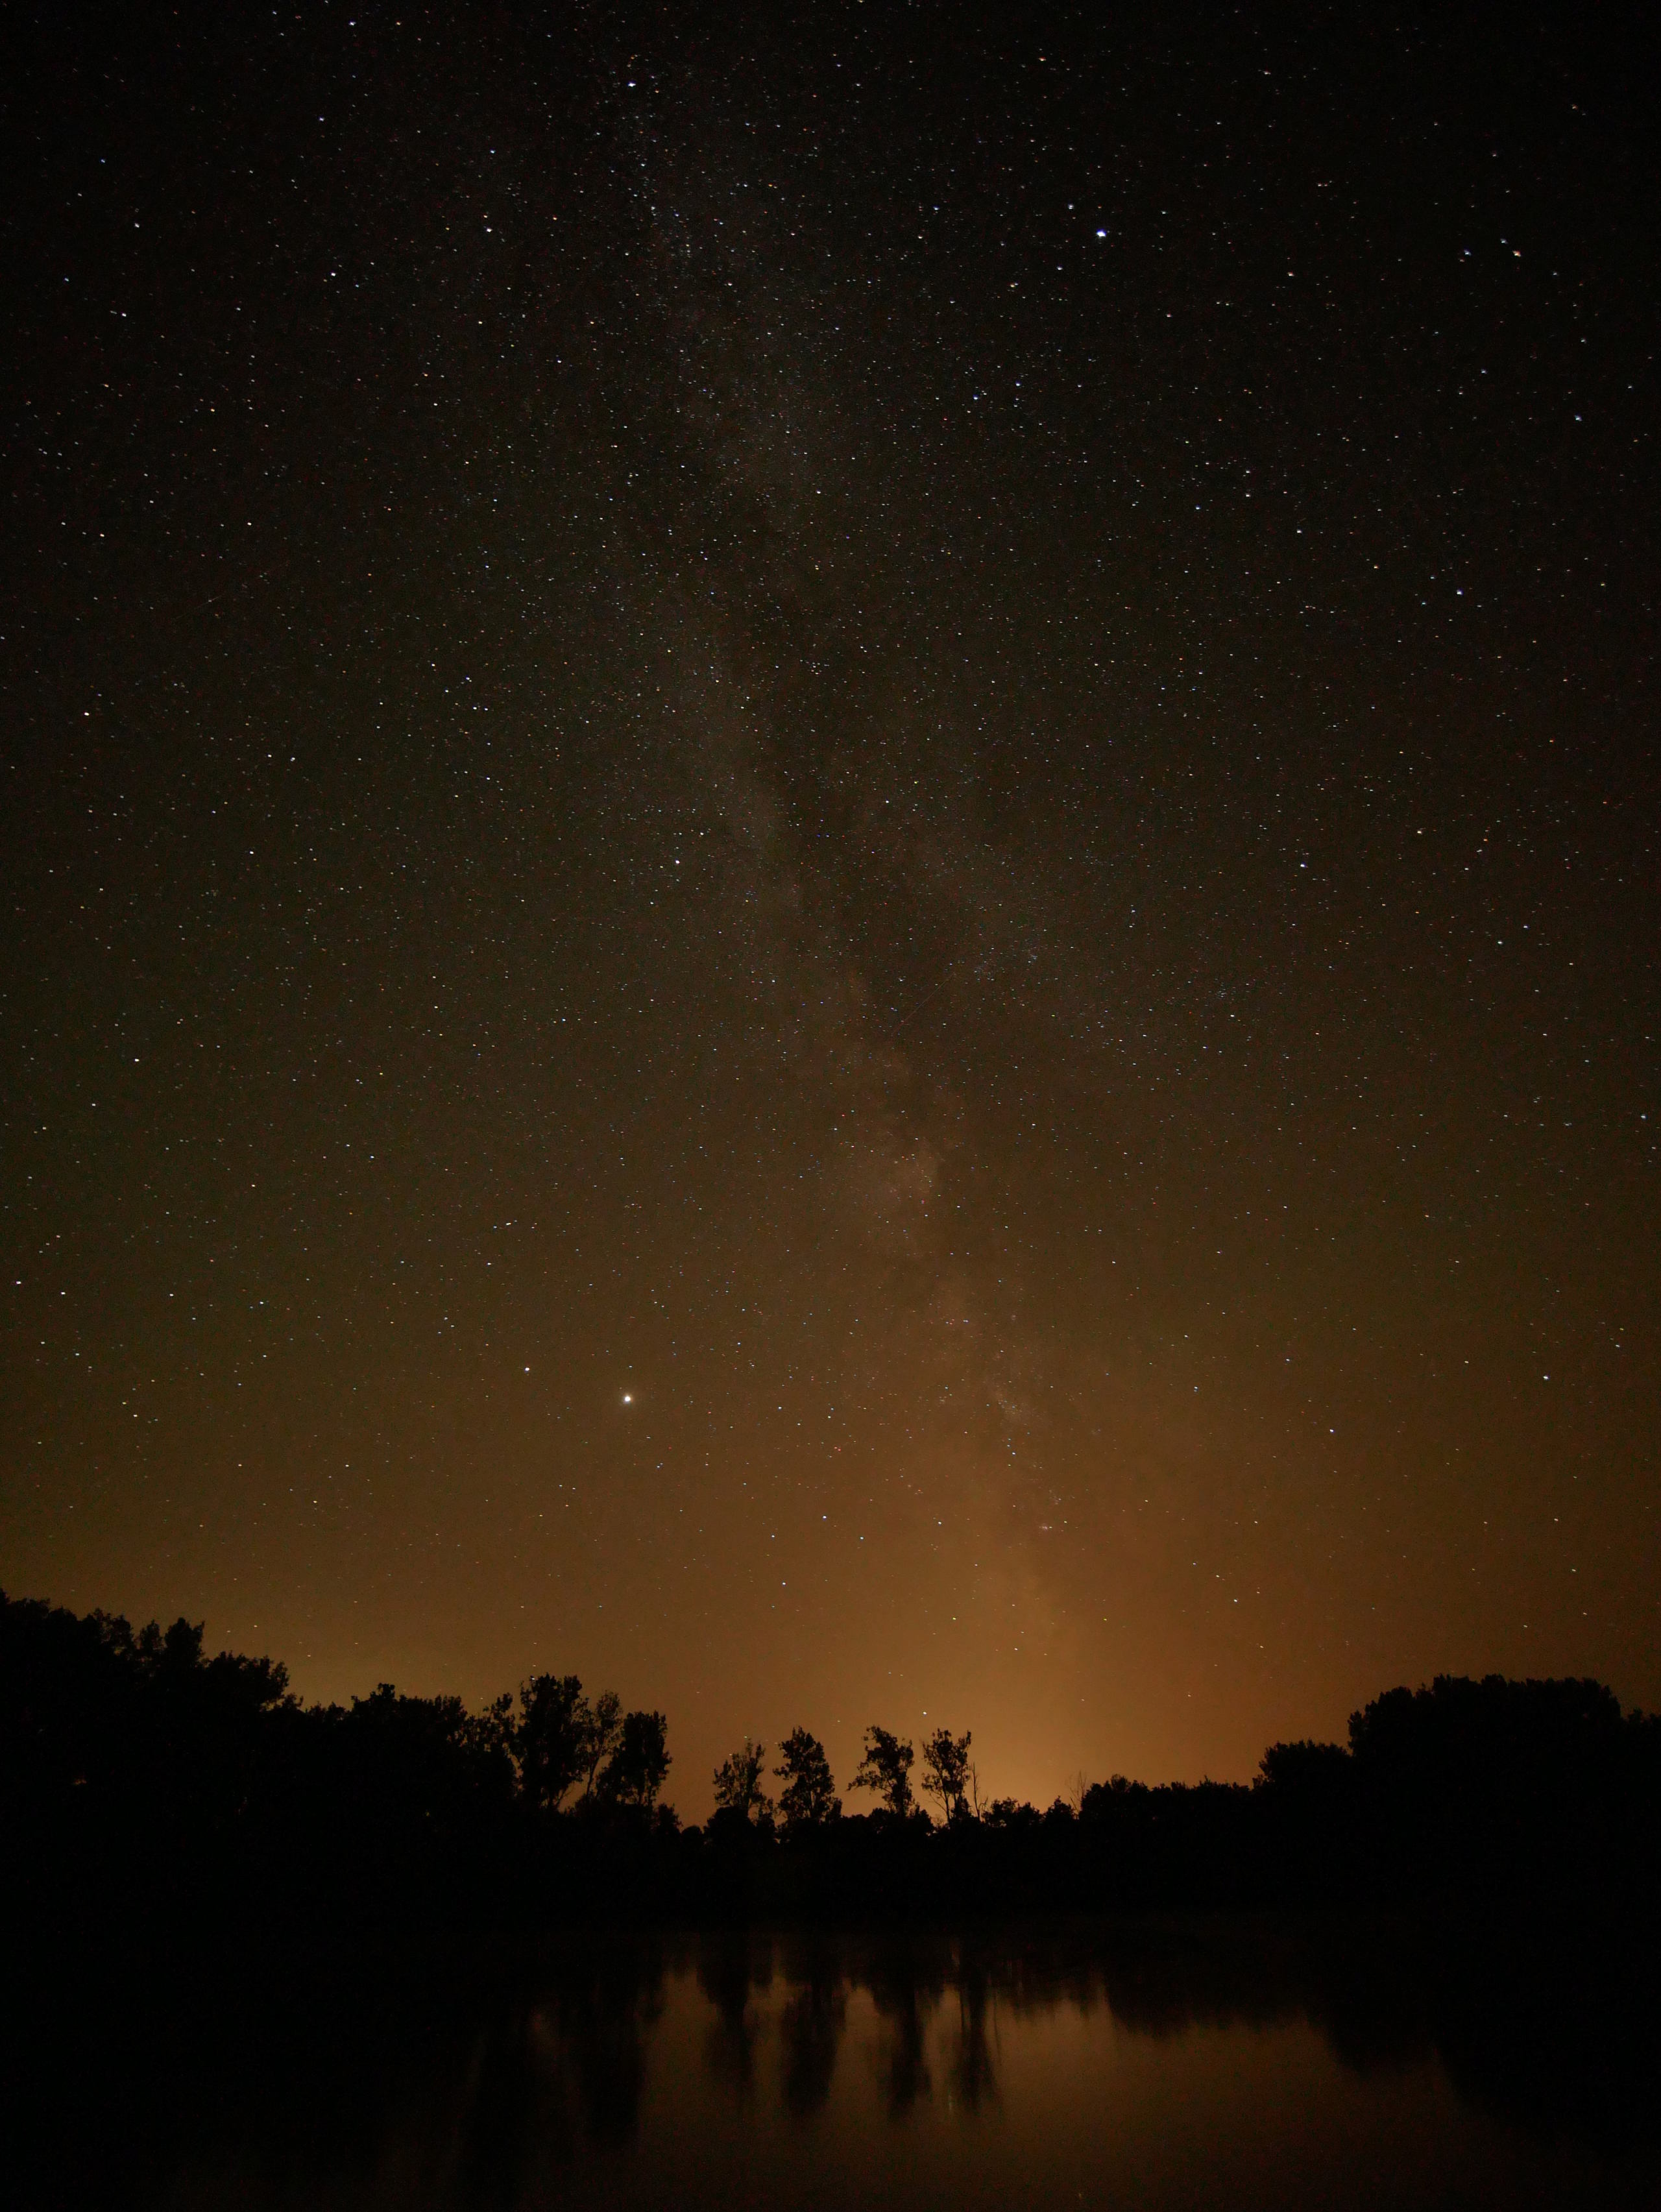 Hesitation objectif pour photo de nuit/voie lactée P1320411